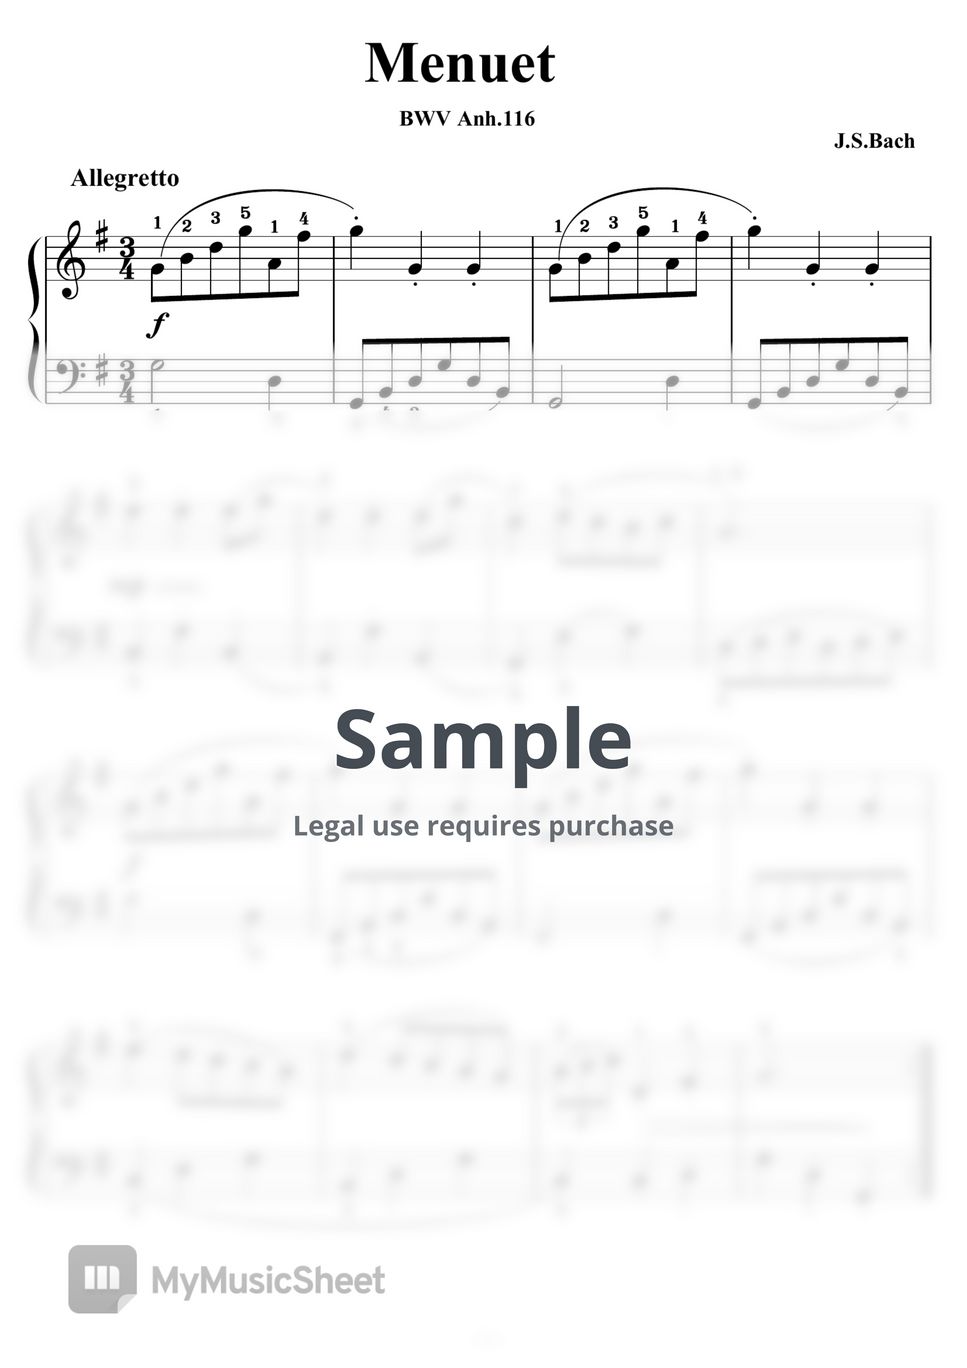 バッハ - メヌエットト長調(BWV Anh.116)バッハ作曲/ピティナ課題曲 by ピアノの先生の楽譜集